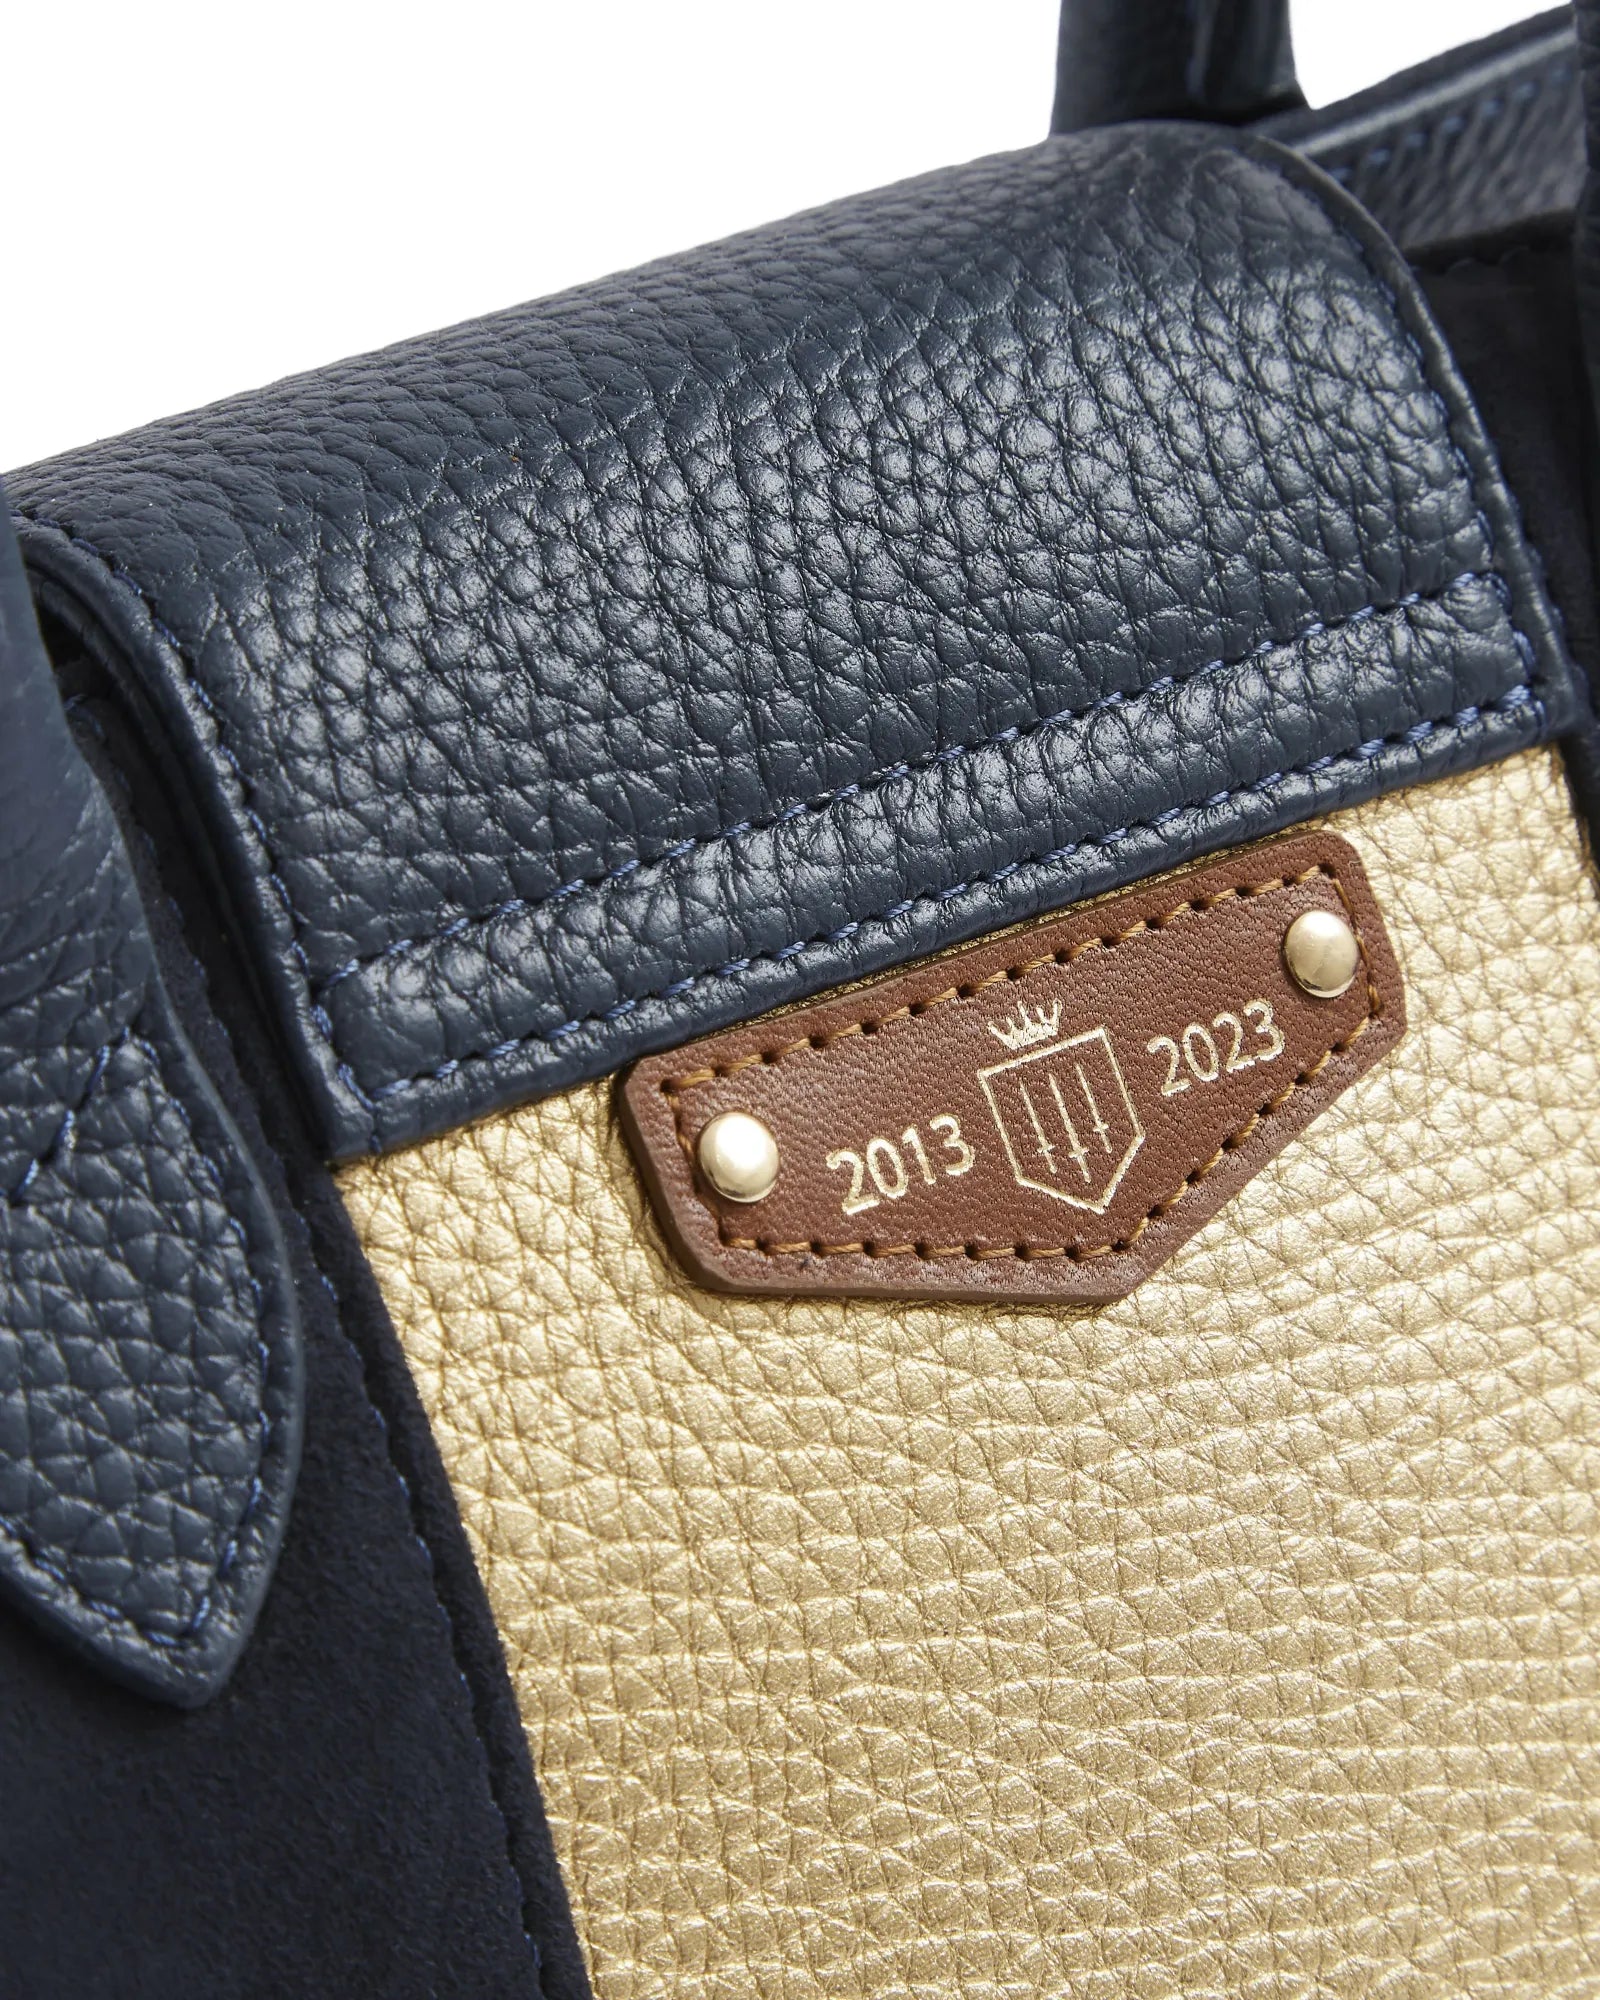 The Mini Windsor Handbag in Navy & Gold Suede